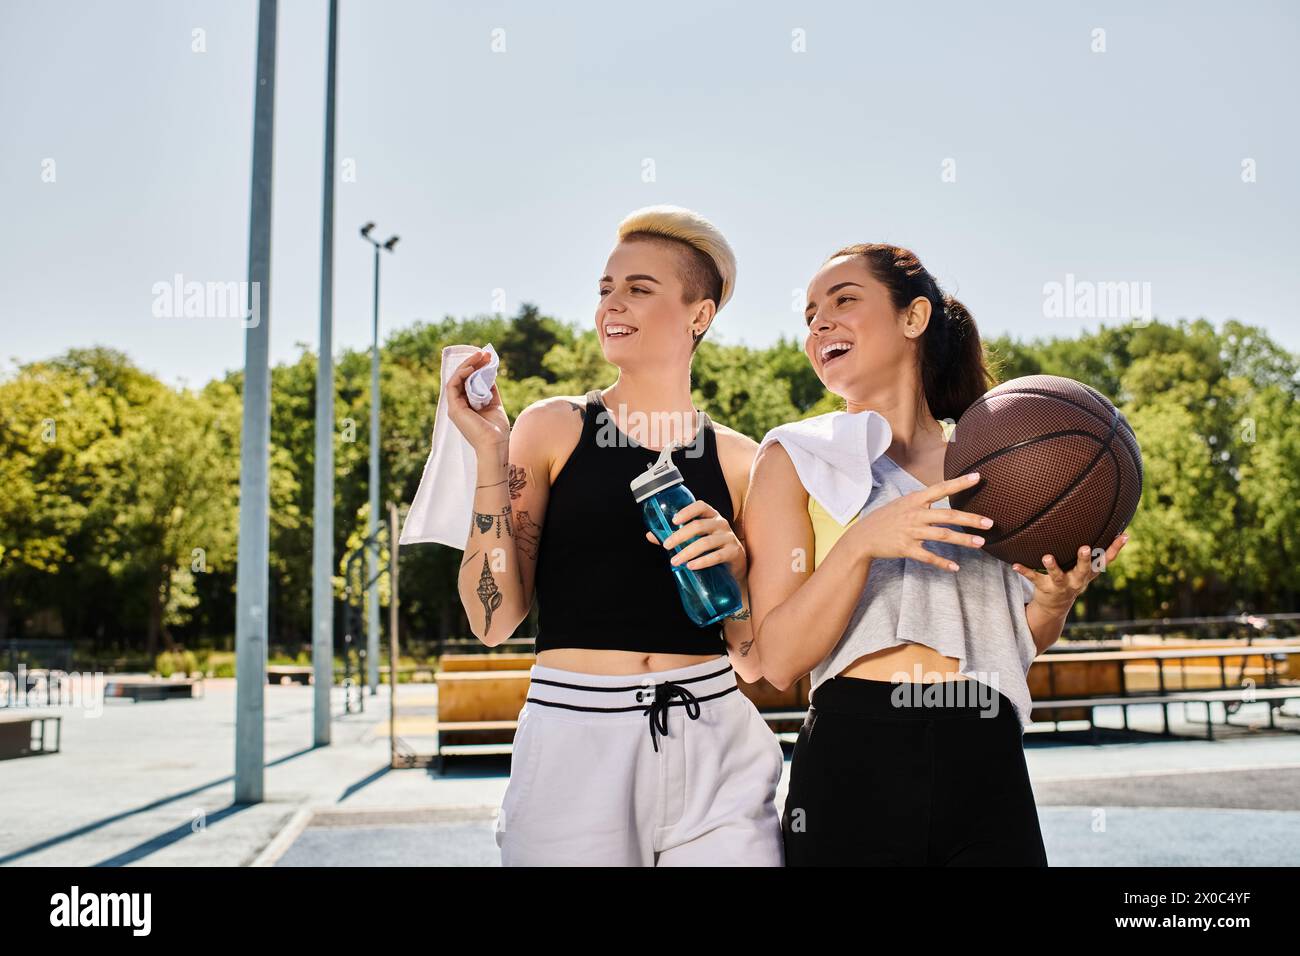 Zwei sportliche Freundinnen stehen zusammen und halten Basketbälle im Sommer im Freien. Stockfoto